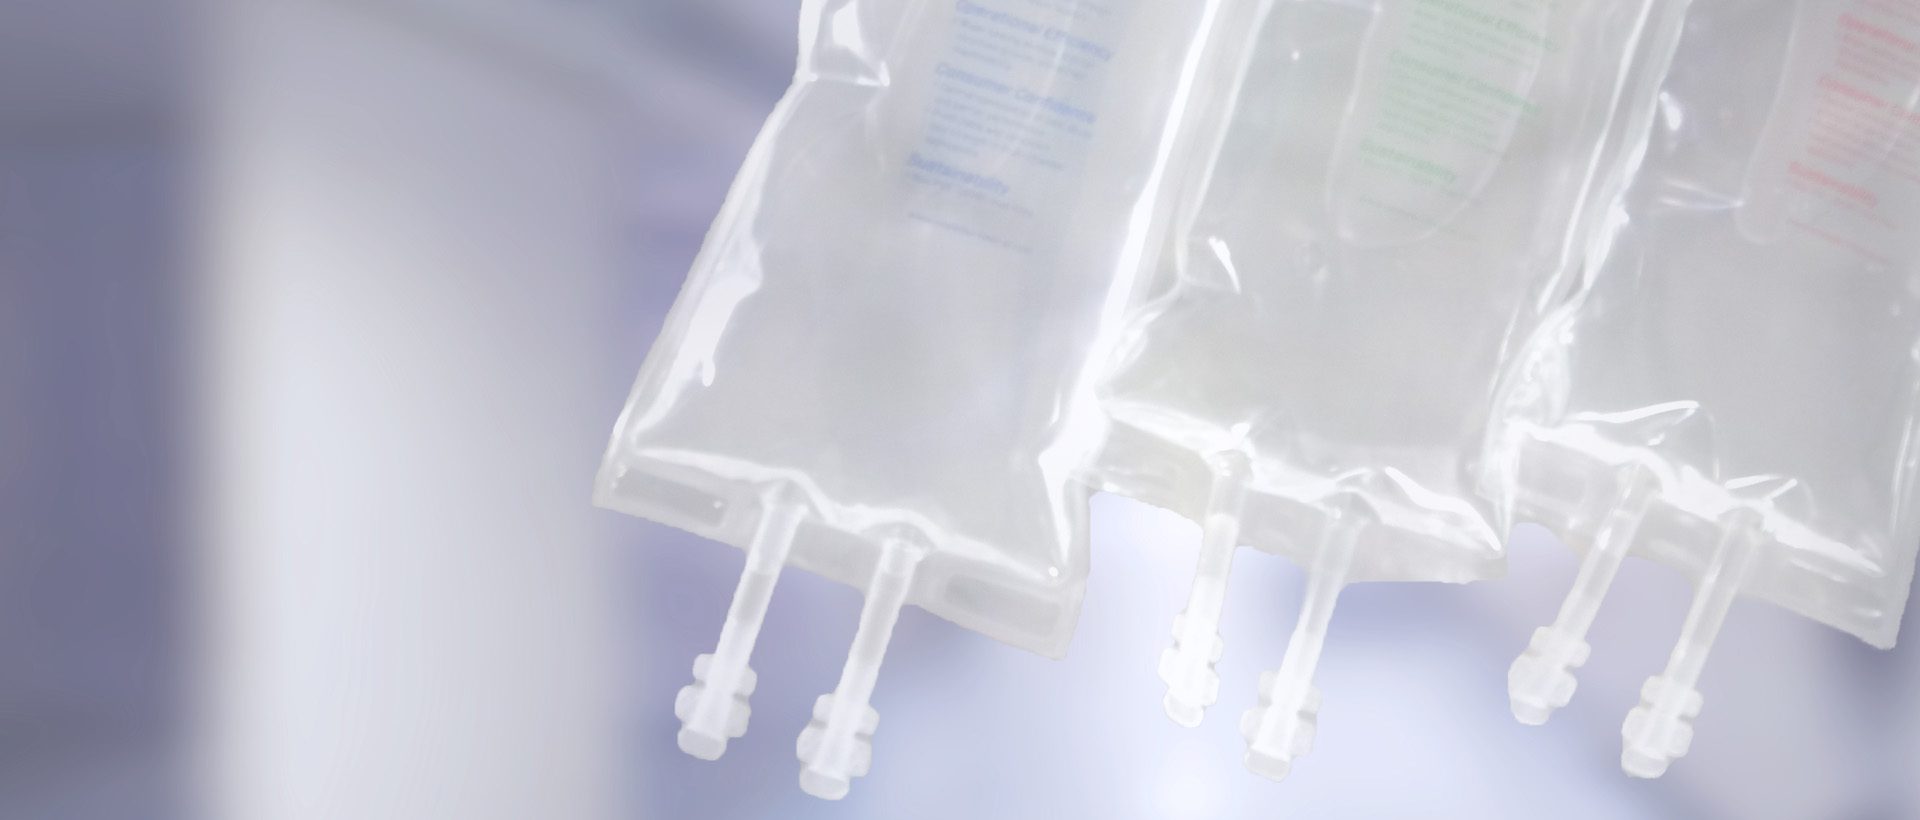 Sacos para soluções intravenosas usados em filmes médicos